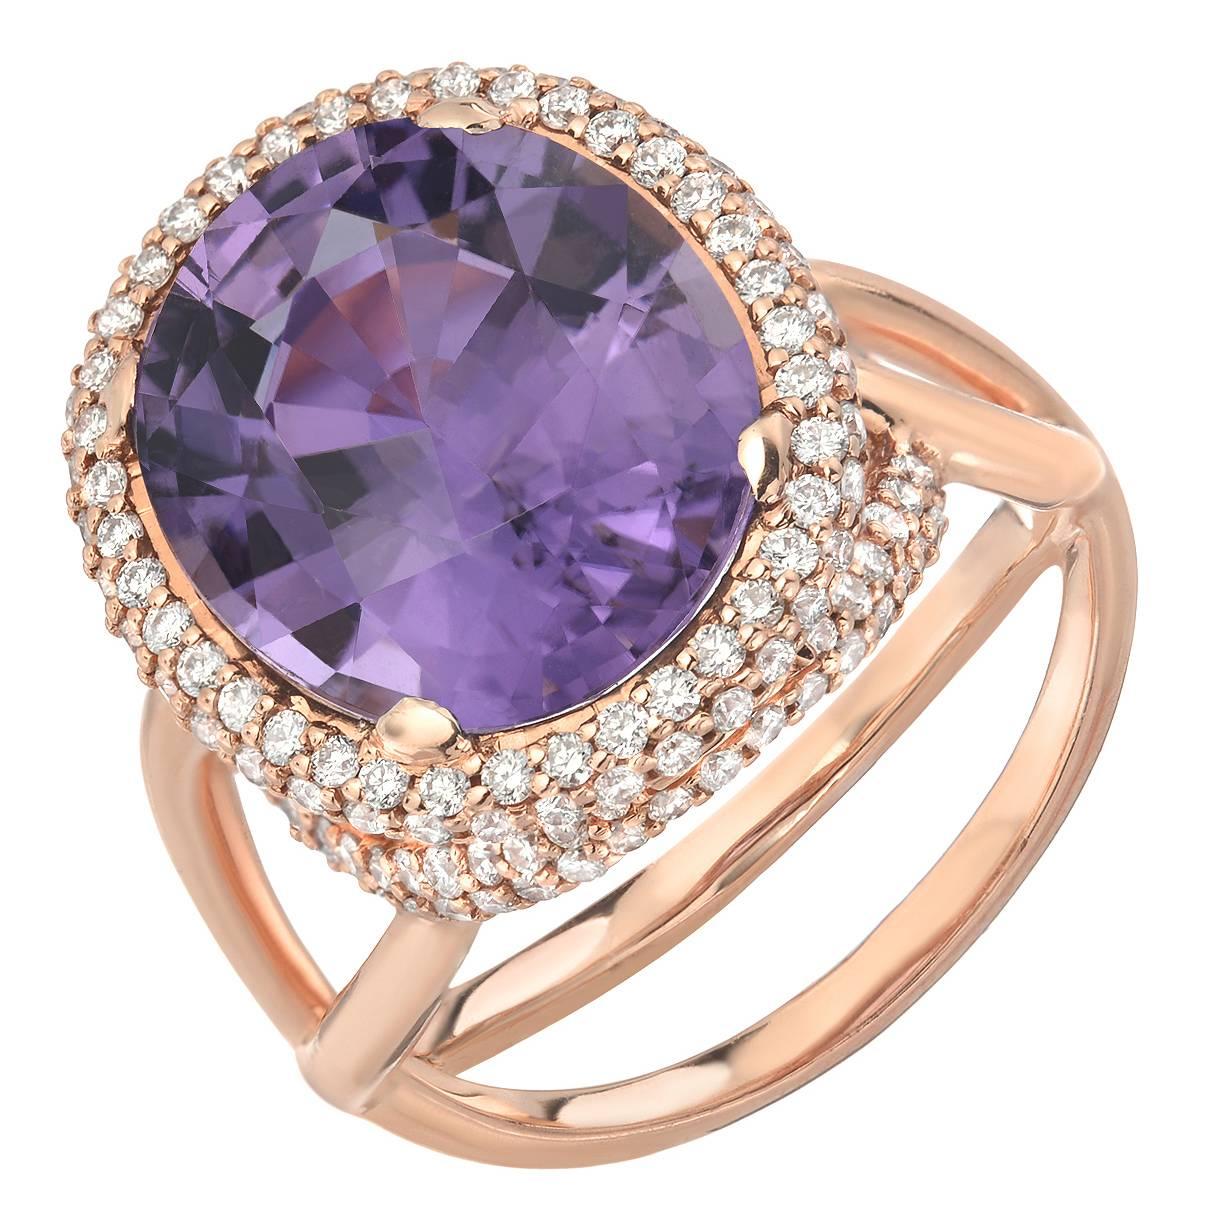 Tamir Lavender Tourmaline Diamond Gold Ring 5.59 Carat 